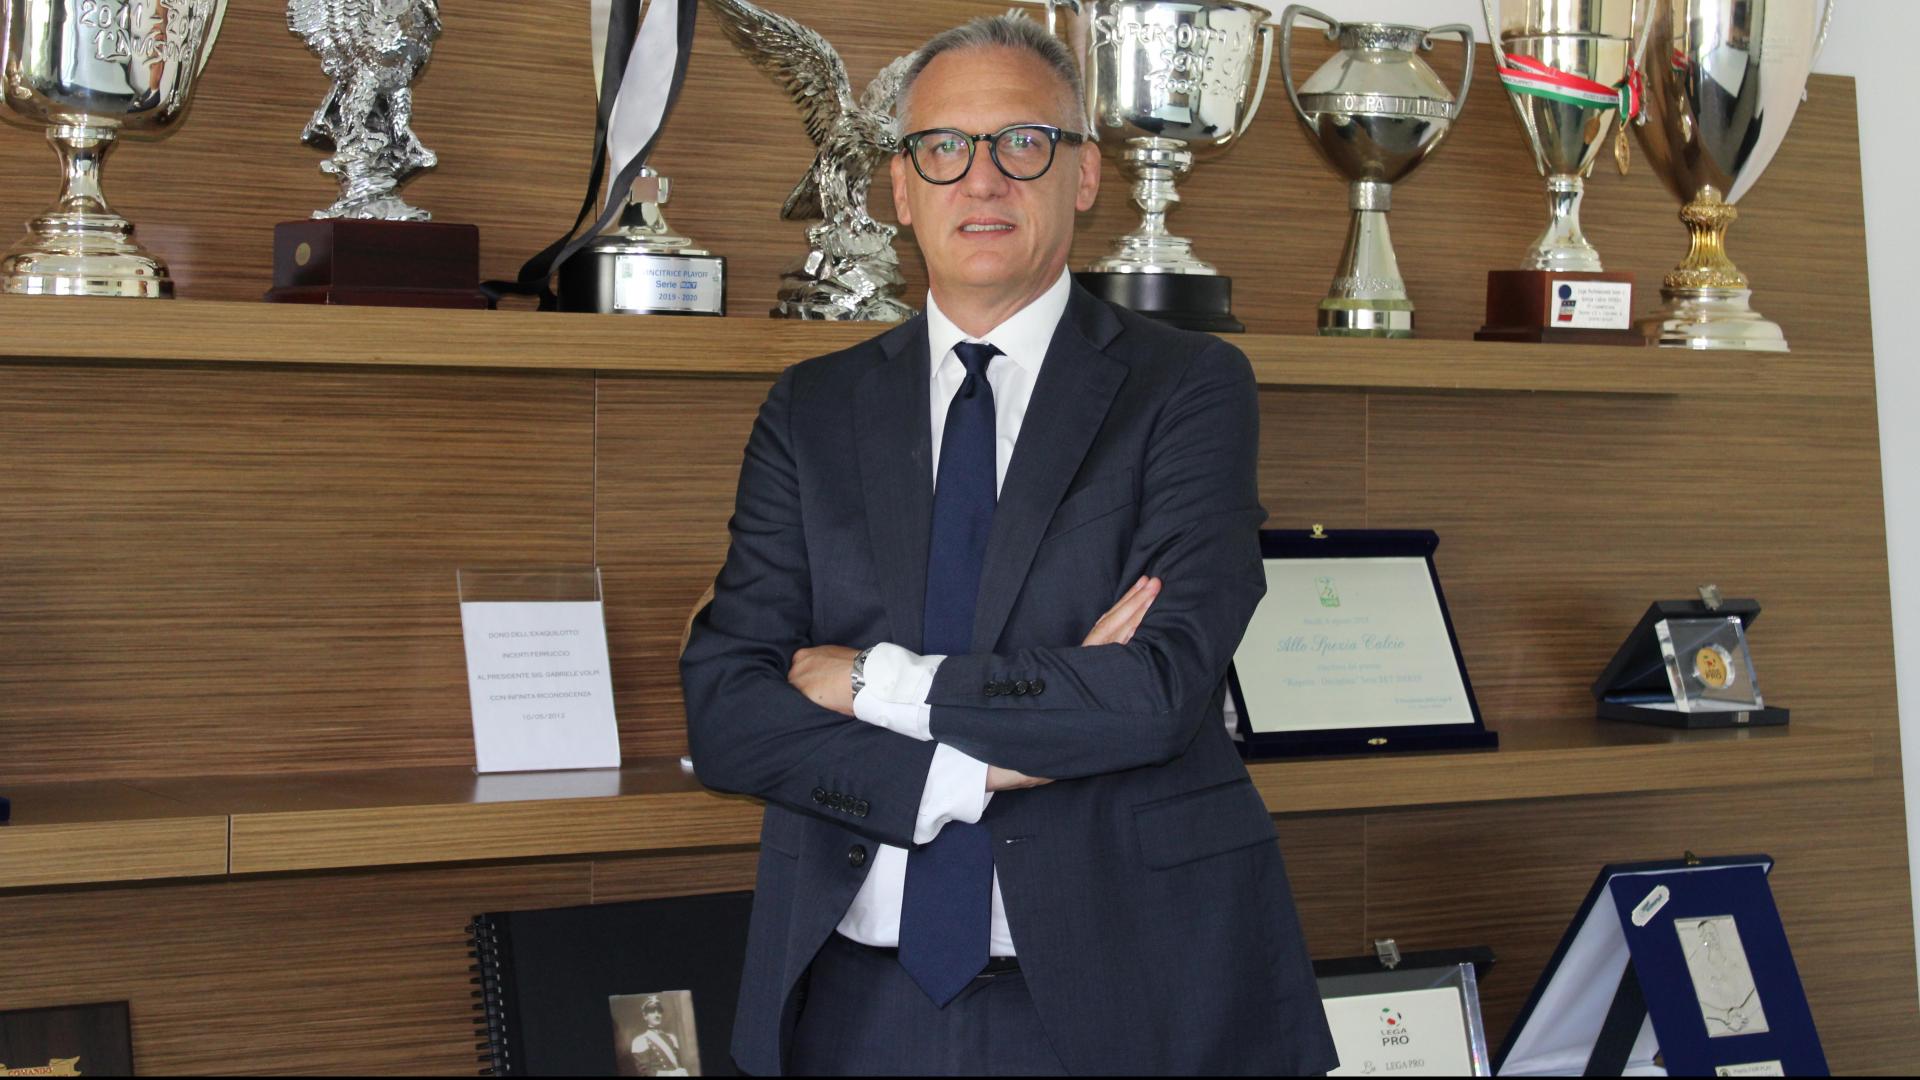 Andrea Gazzoli is the new General Manager of Spezia Calcio